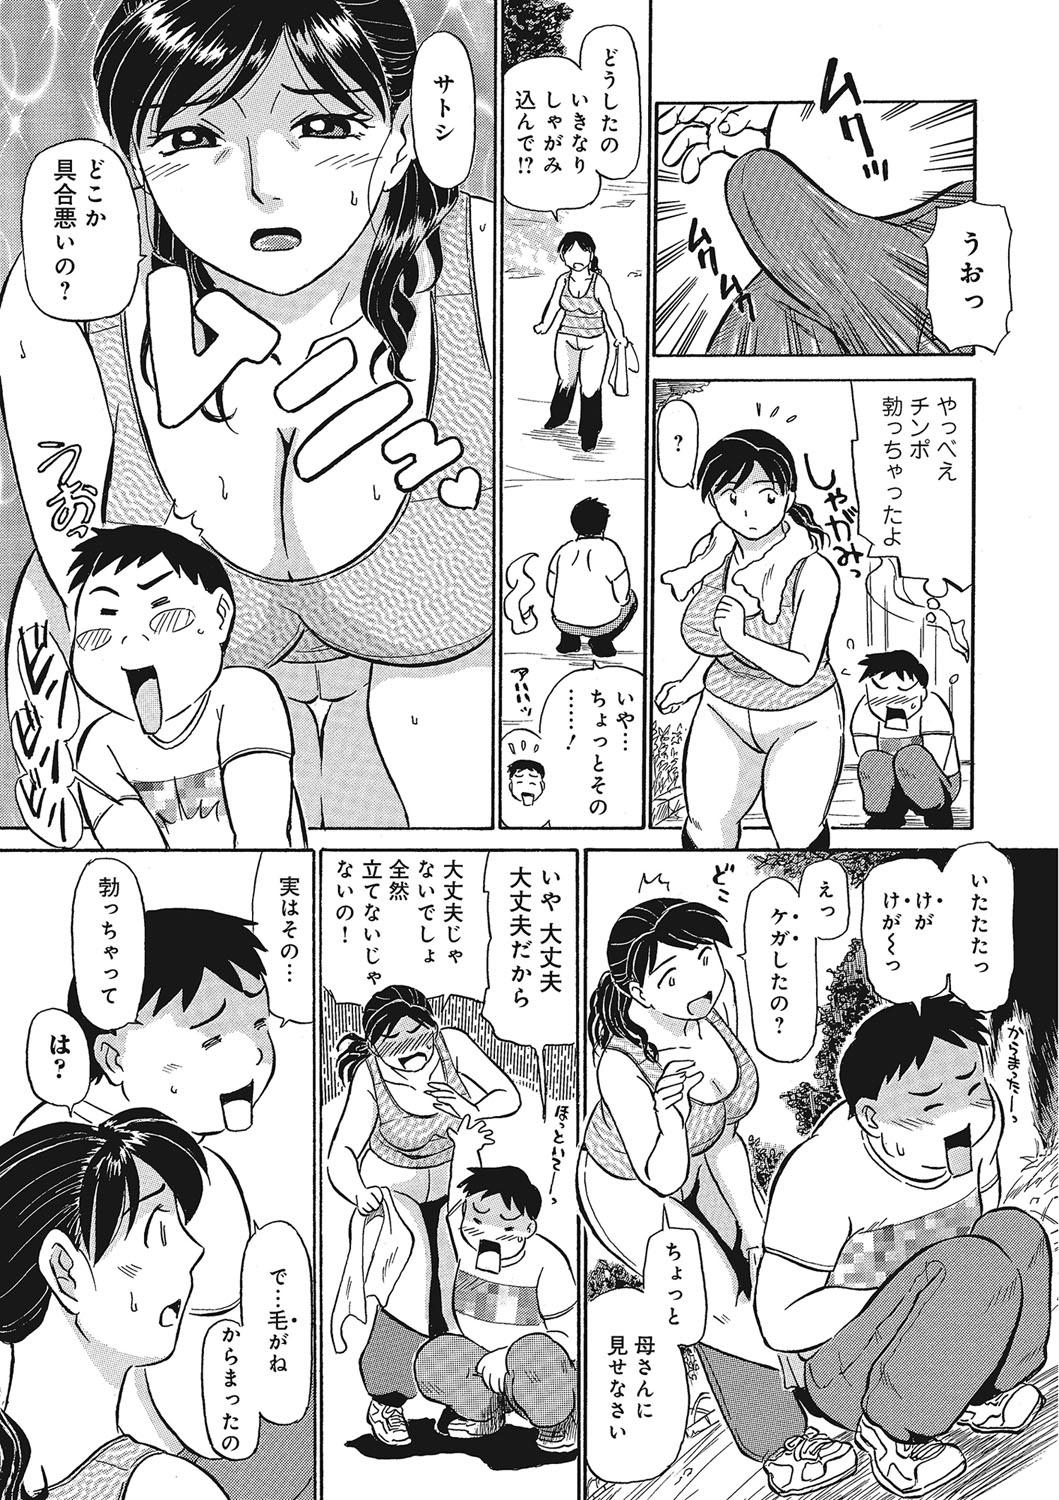 Bribe Jukujobo no Biniku ni Meromero Funny - Page 6